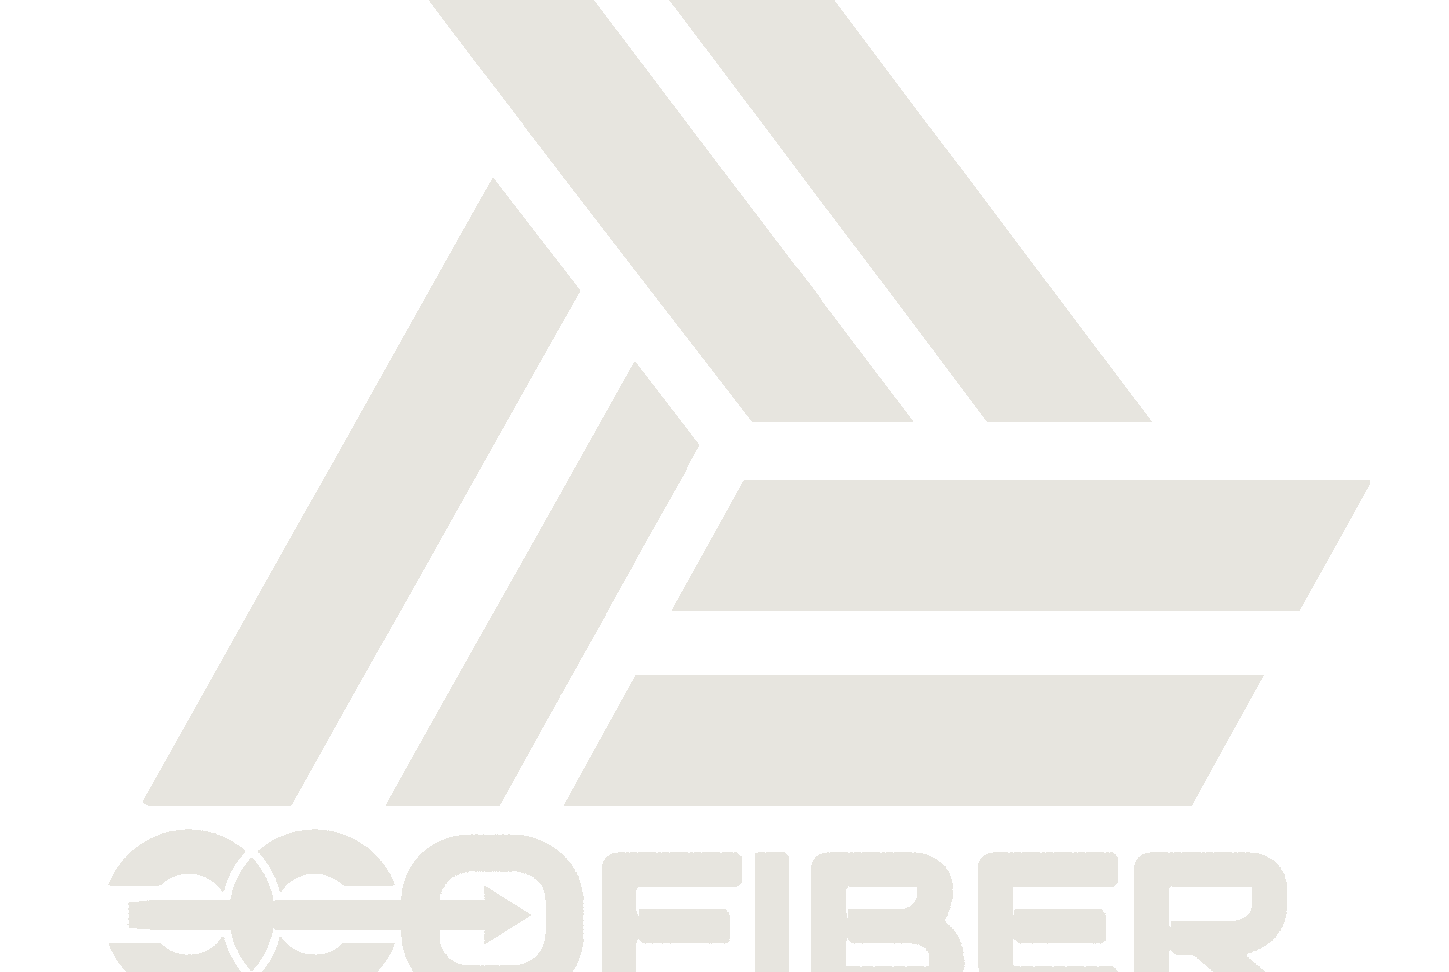 Ecofiber